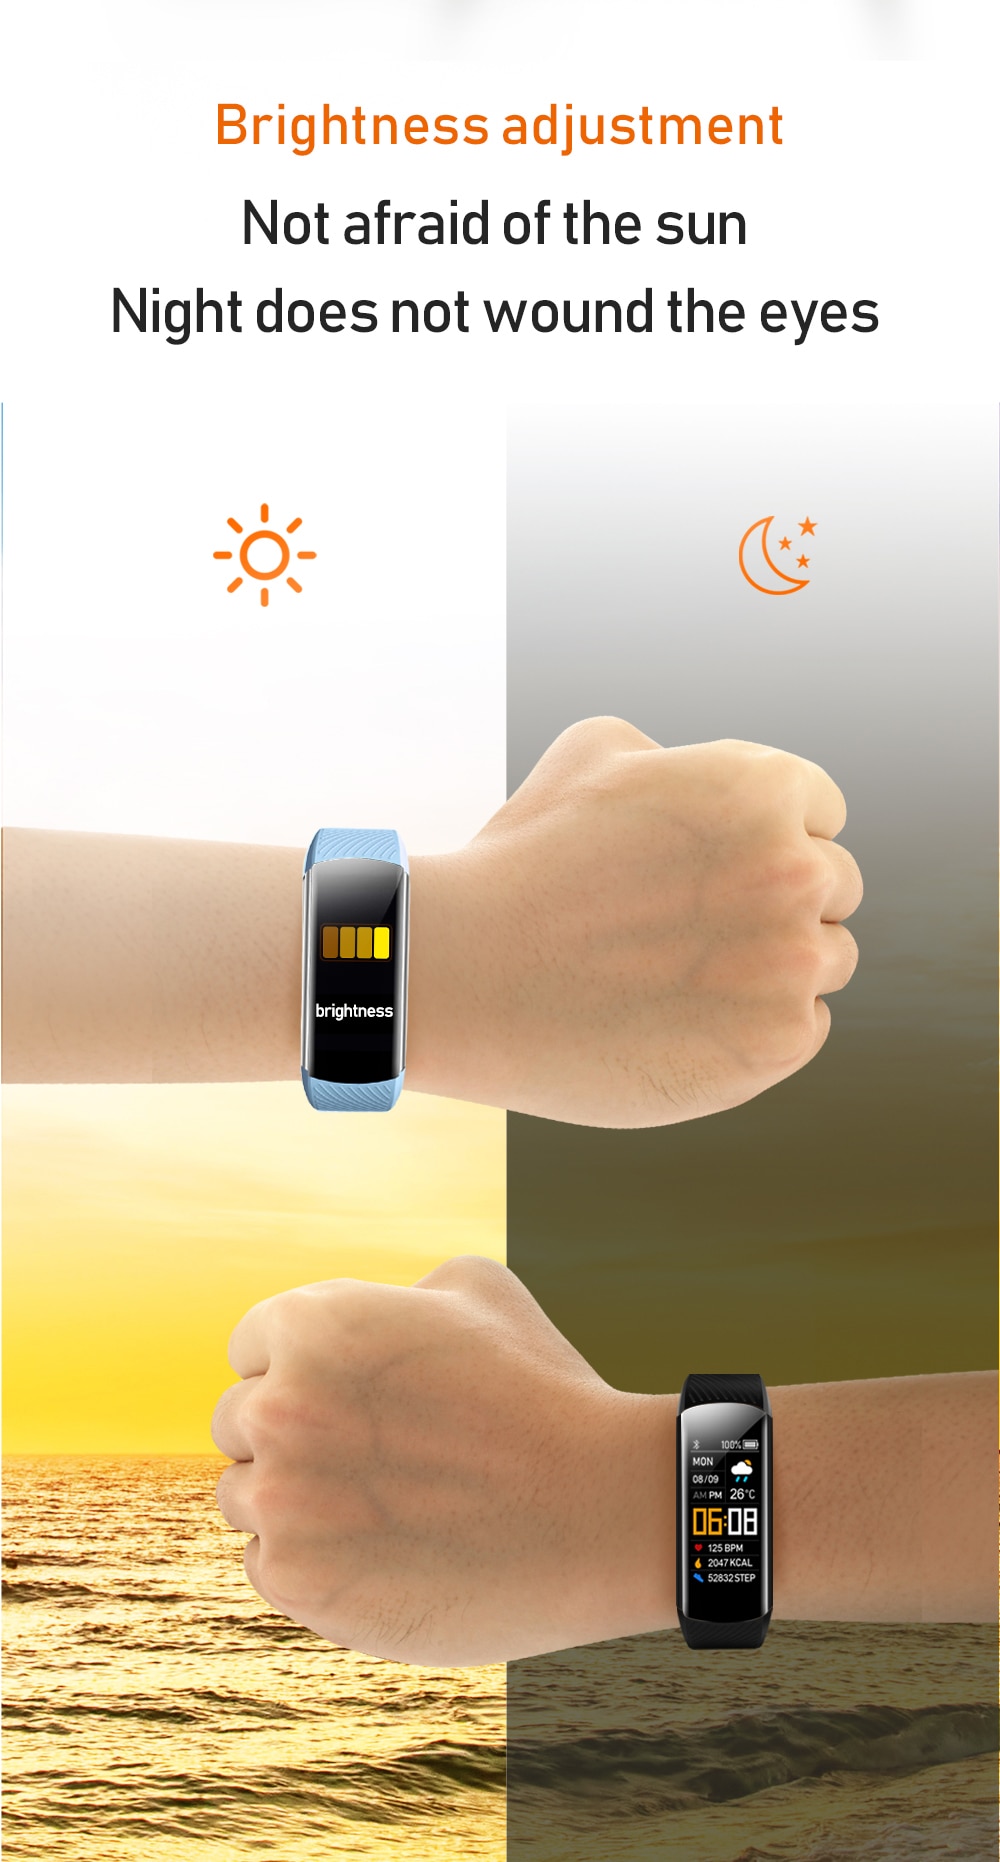 2020 Smart Watch Men Women Sport Smartwatch Blood Pressure Heart Rate Monitor Electronic Fitness Tracker Watch Ip67 Waterproof